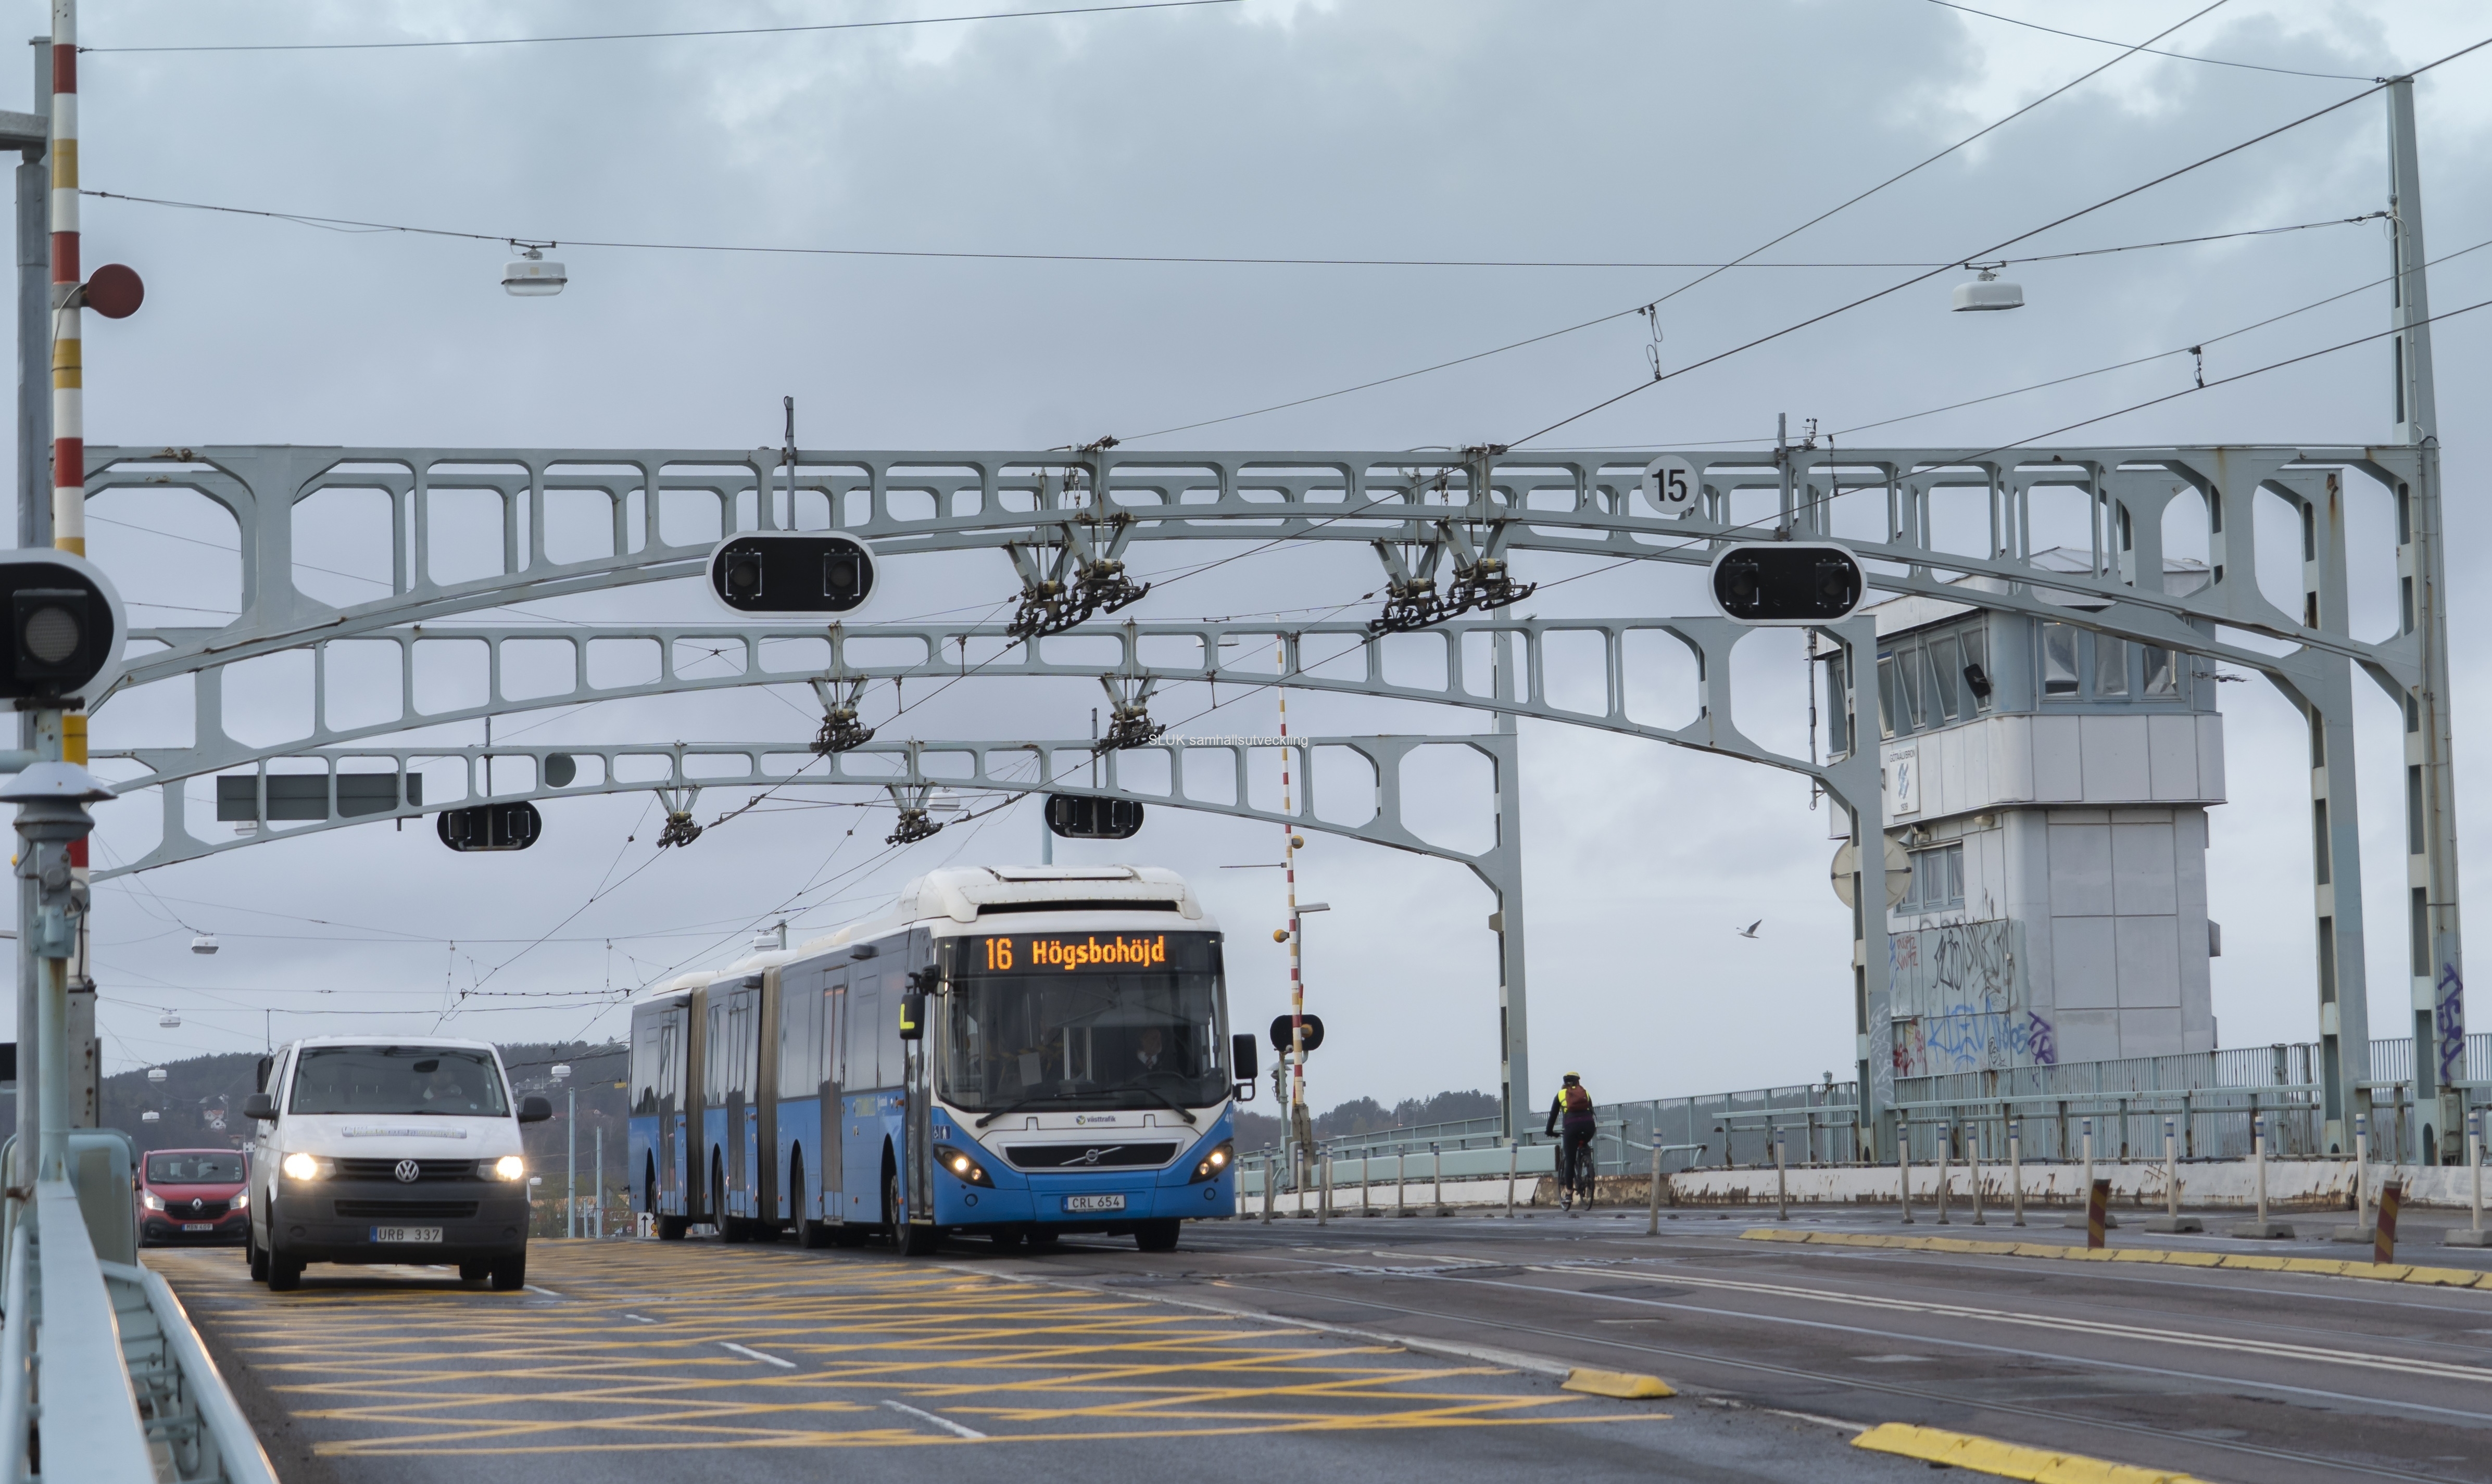 Trafik på Götaälvbron. Buss linje 16 mot Högsbohöjd passerar.